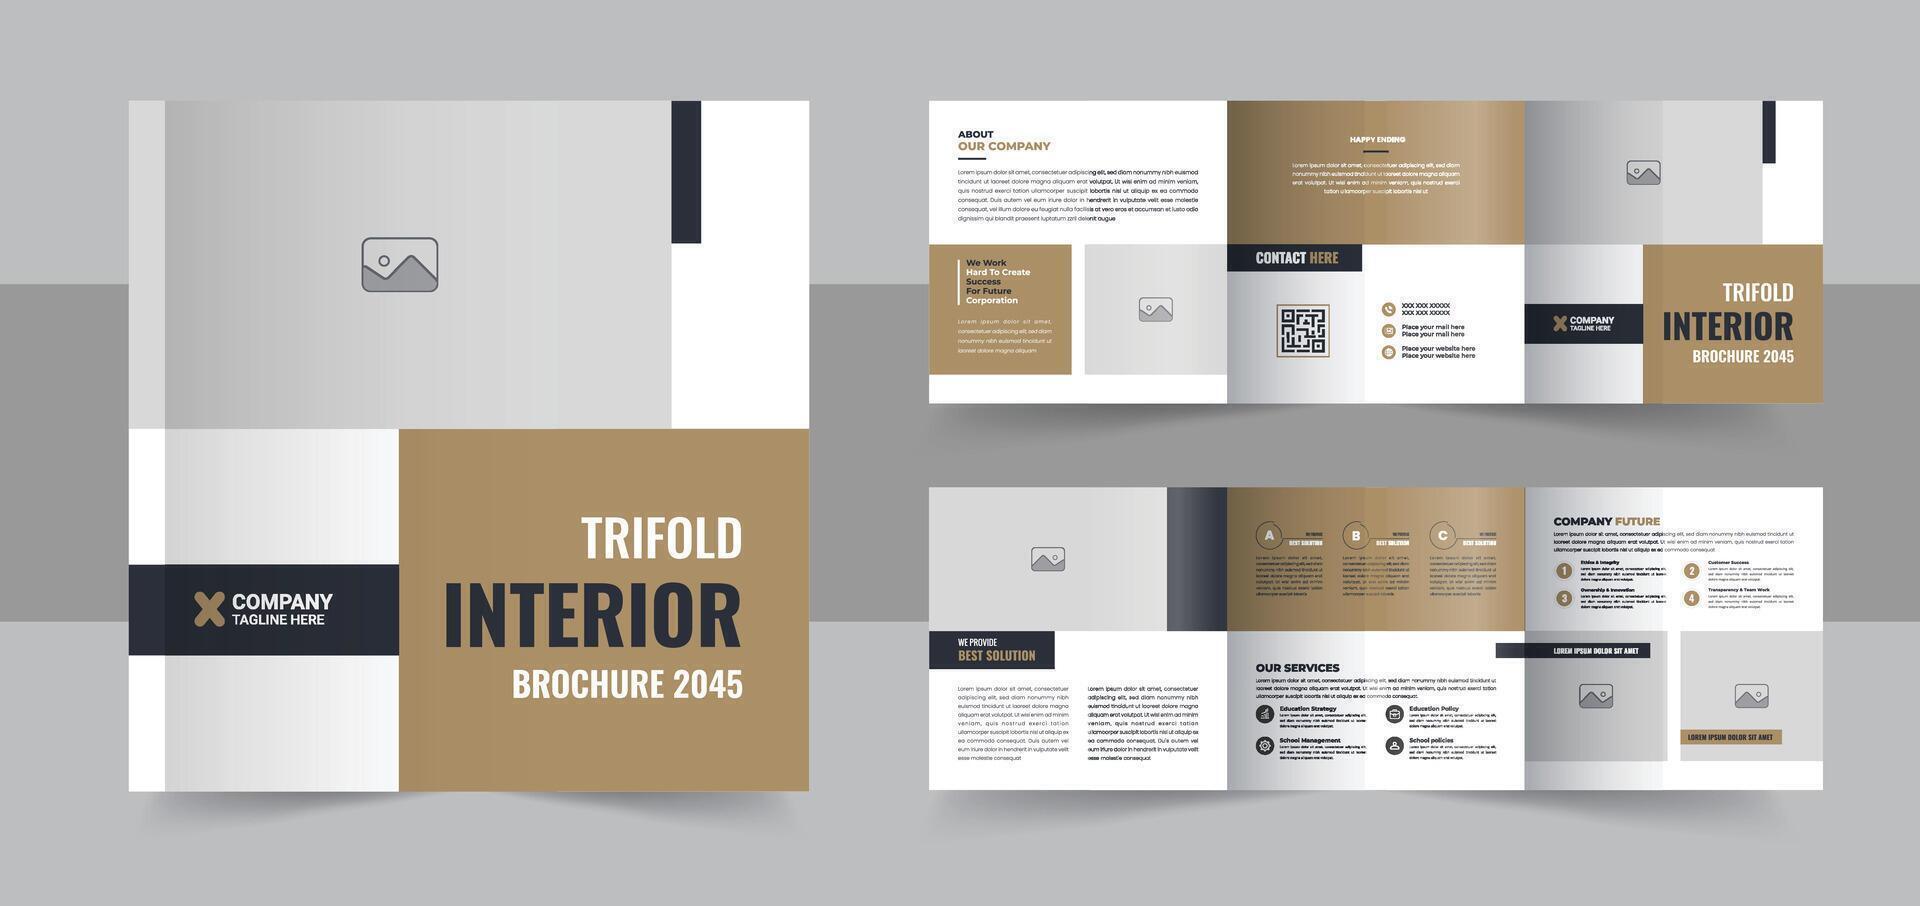 Interior design square trifold brochure, Interior design magazine layout or Modern interior design portfolio layout template vector